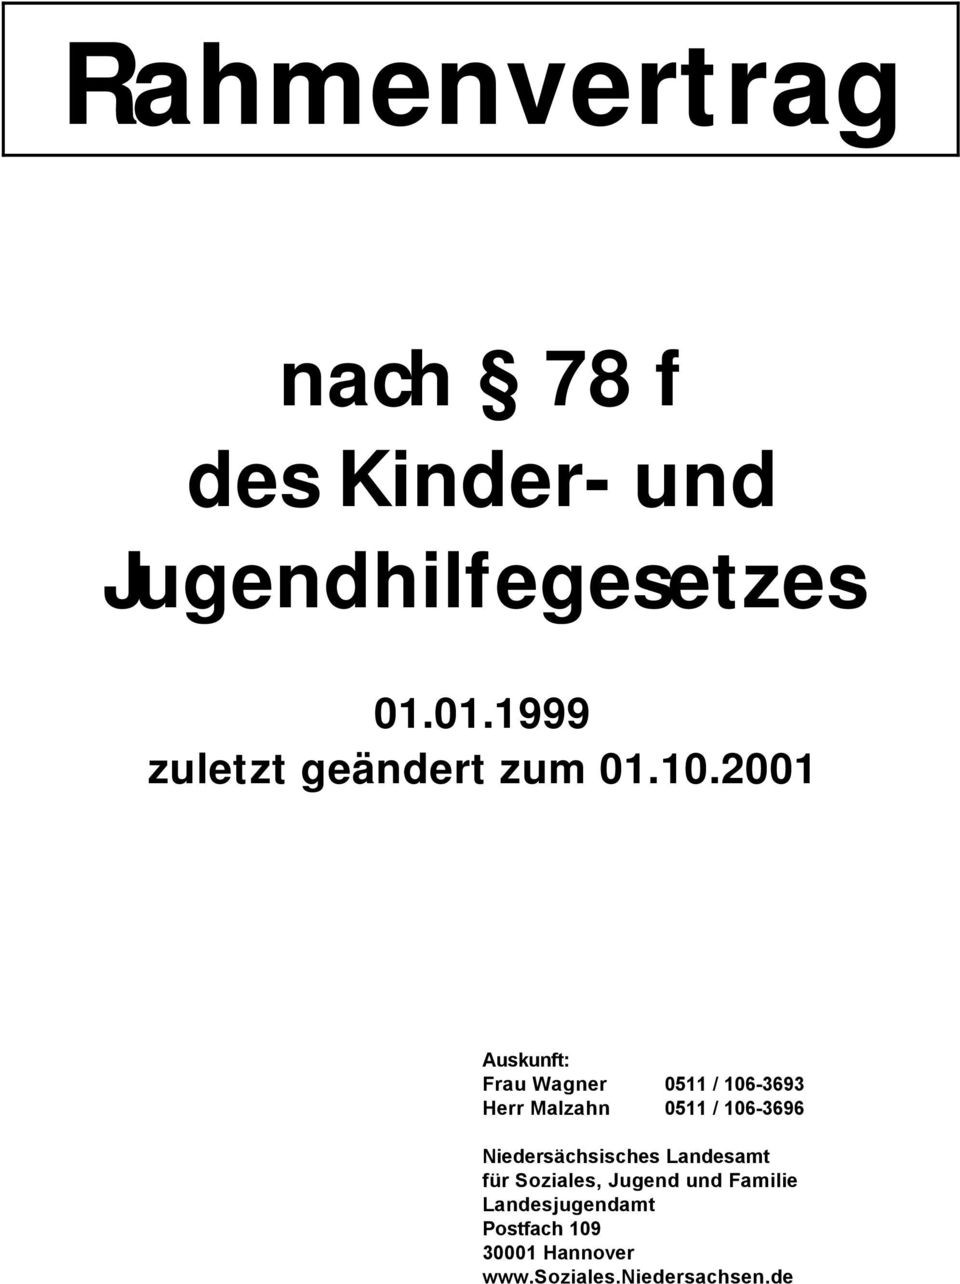 2001 Auskunft: Frau Wagner 0511 / 106-3693 Herr Malzahn 0511 / 106-3696